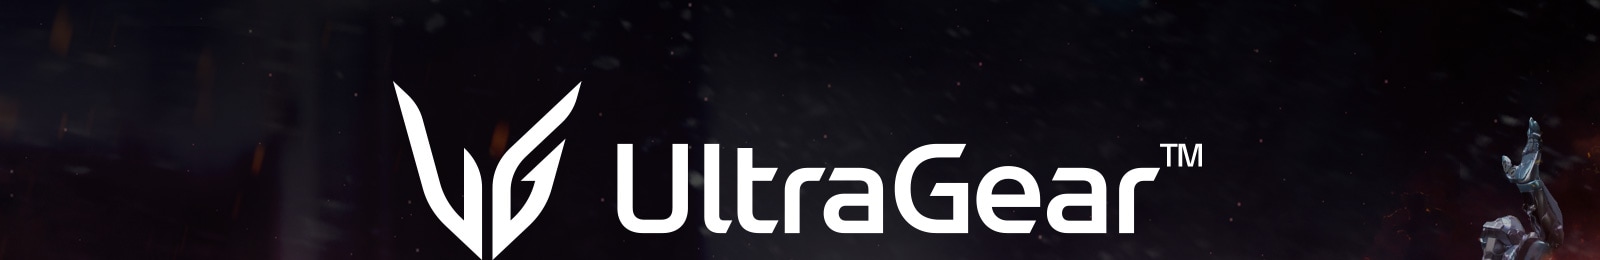 LG UltraGear Logo.